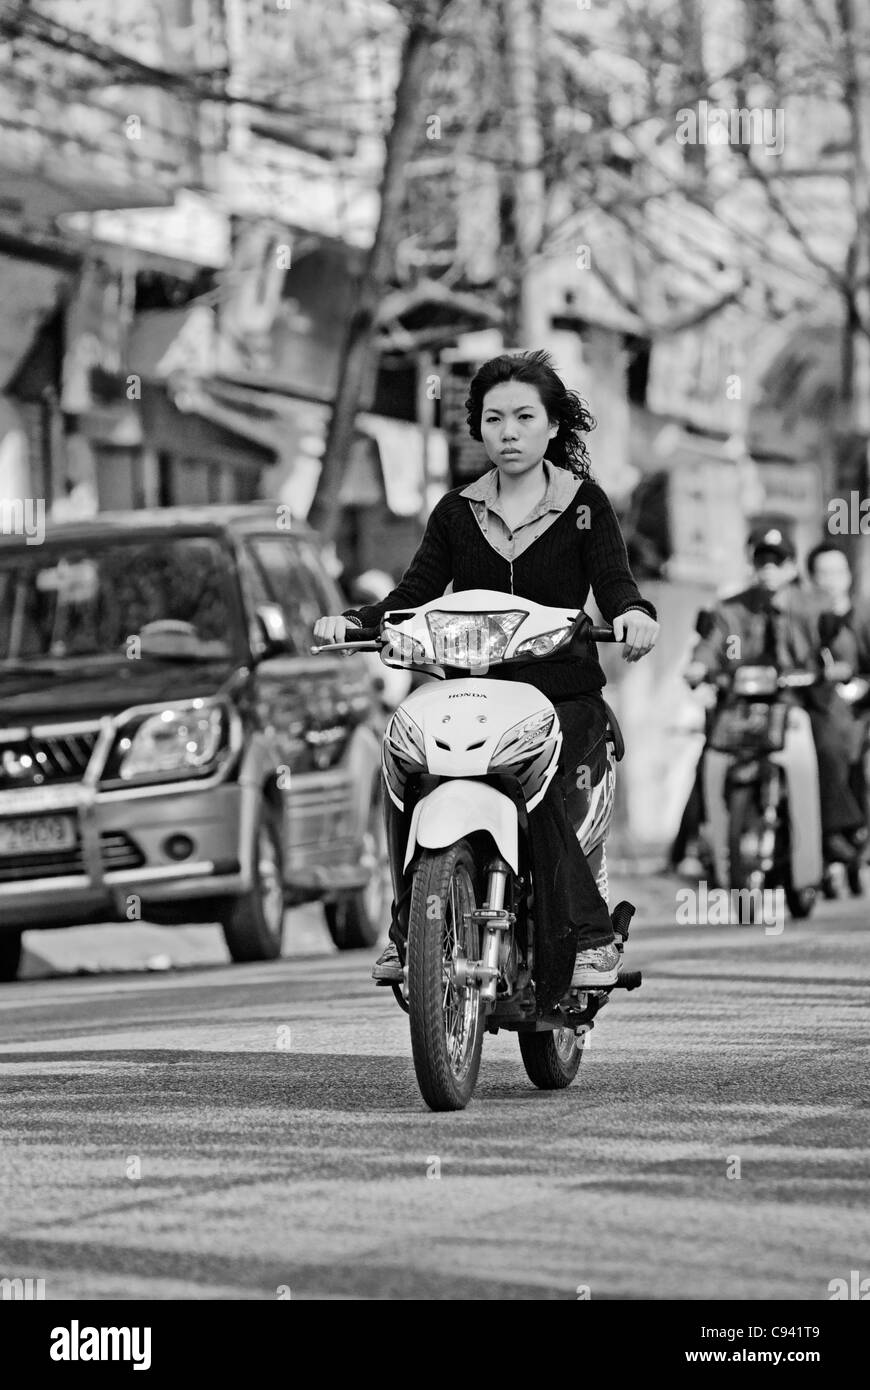 Asien, Vietnam, Hanoi. Hanoi Altstadt. Junge vietnamesische Frau auf einem kleinen Motorrad durch Hanoi. Stockfoto